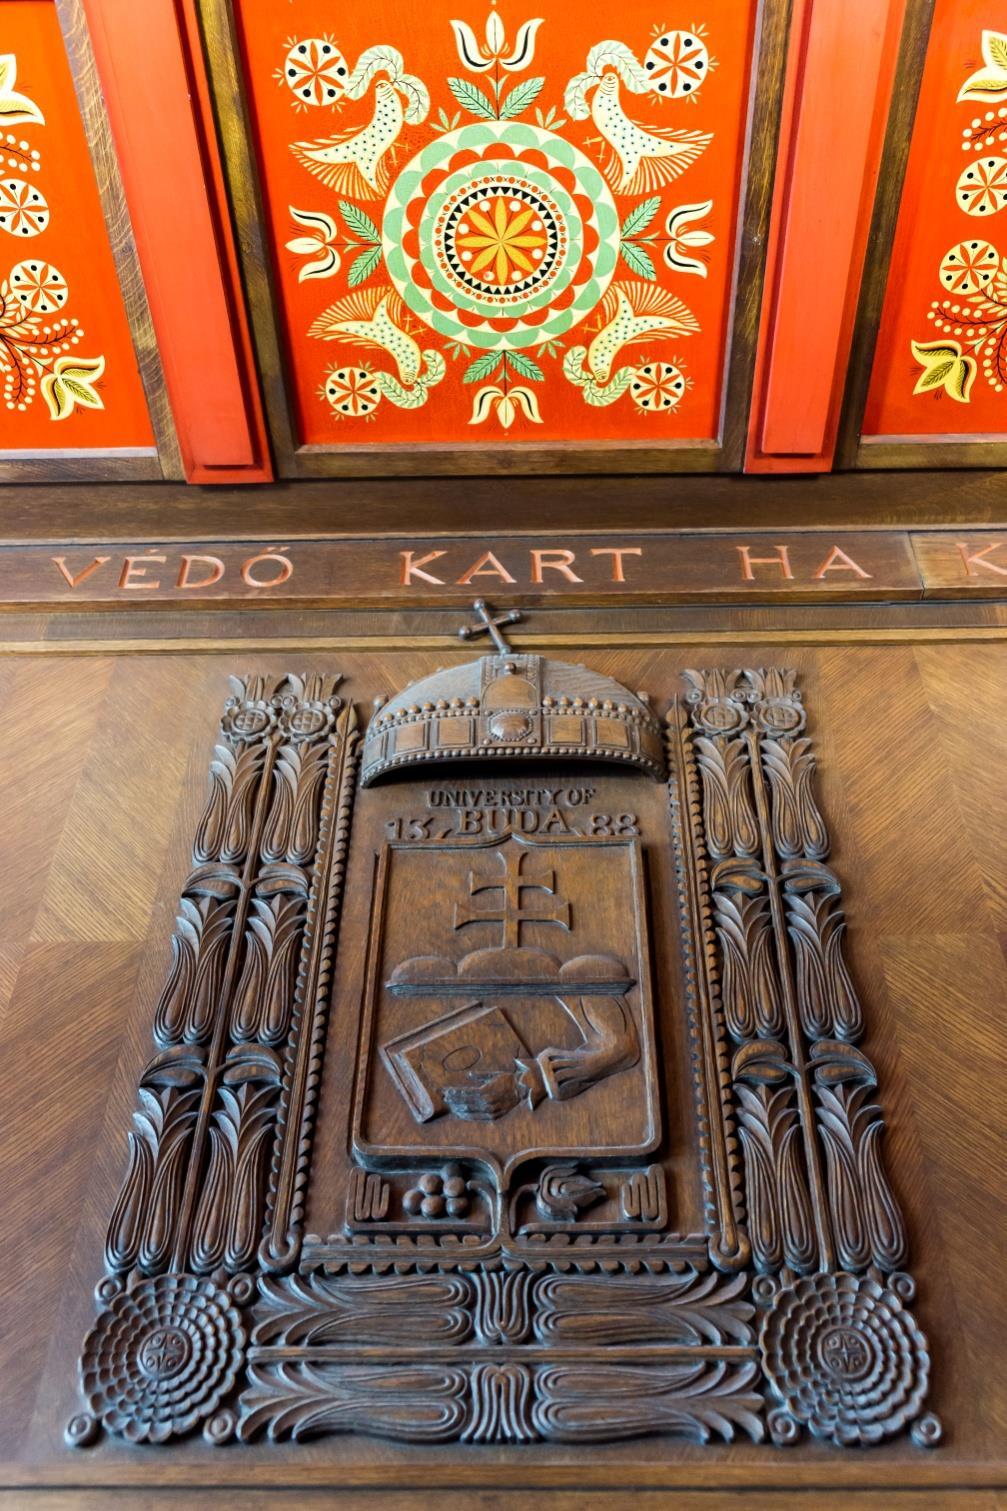 A Budai Egyetem 1388. címere, fölötte egy mennyezetkazetta. 23 22 National Rooms. Hungarian Room. https://upload.wikimedia.